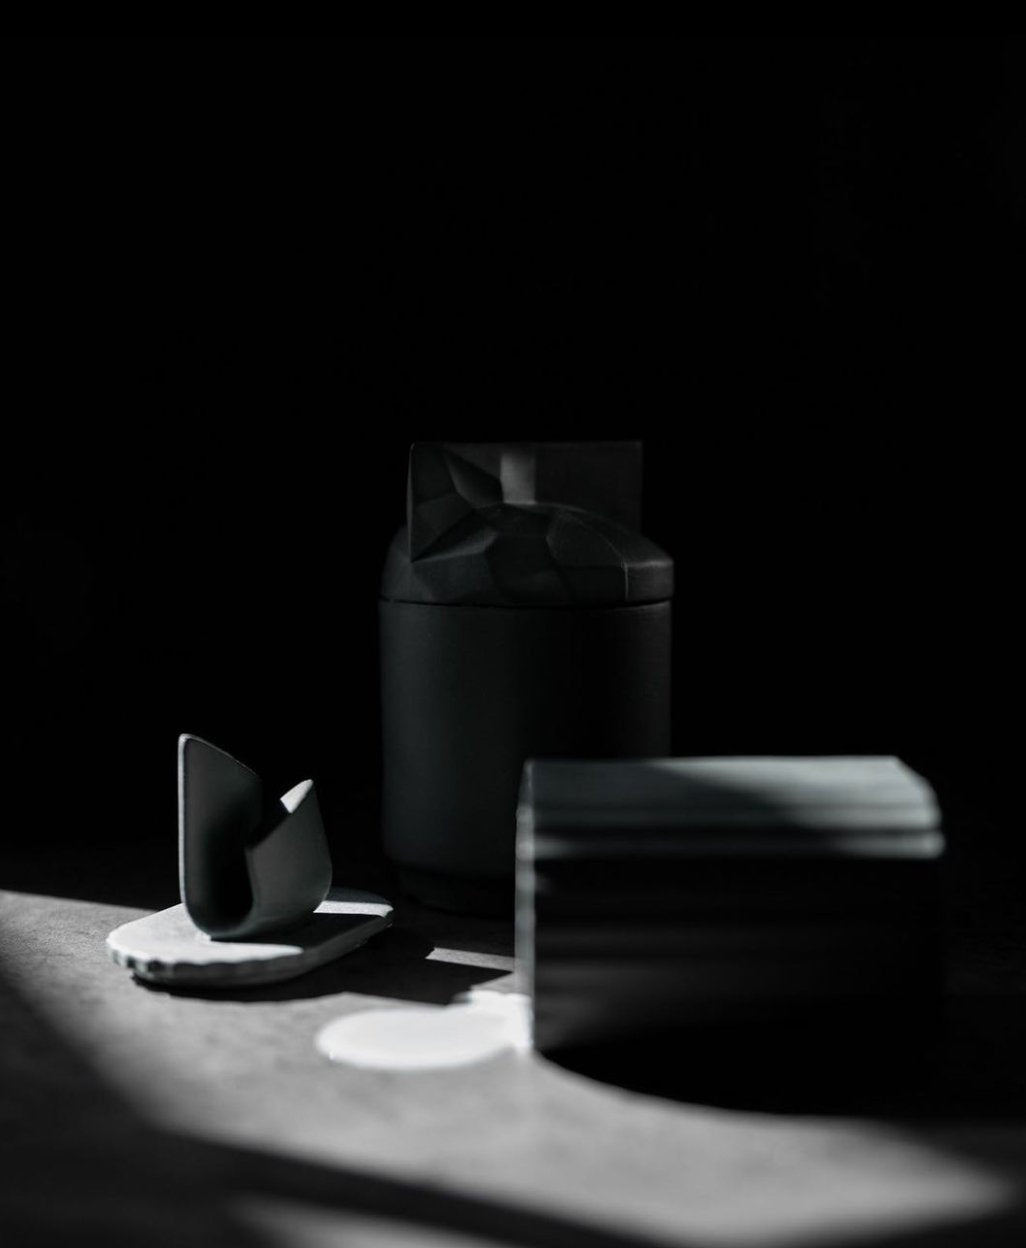 Origami Black - świeca z czarnej porcelany - Kyuka Design